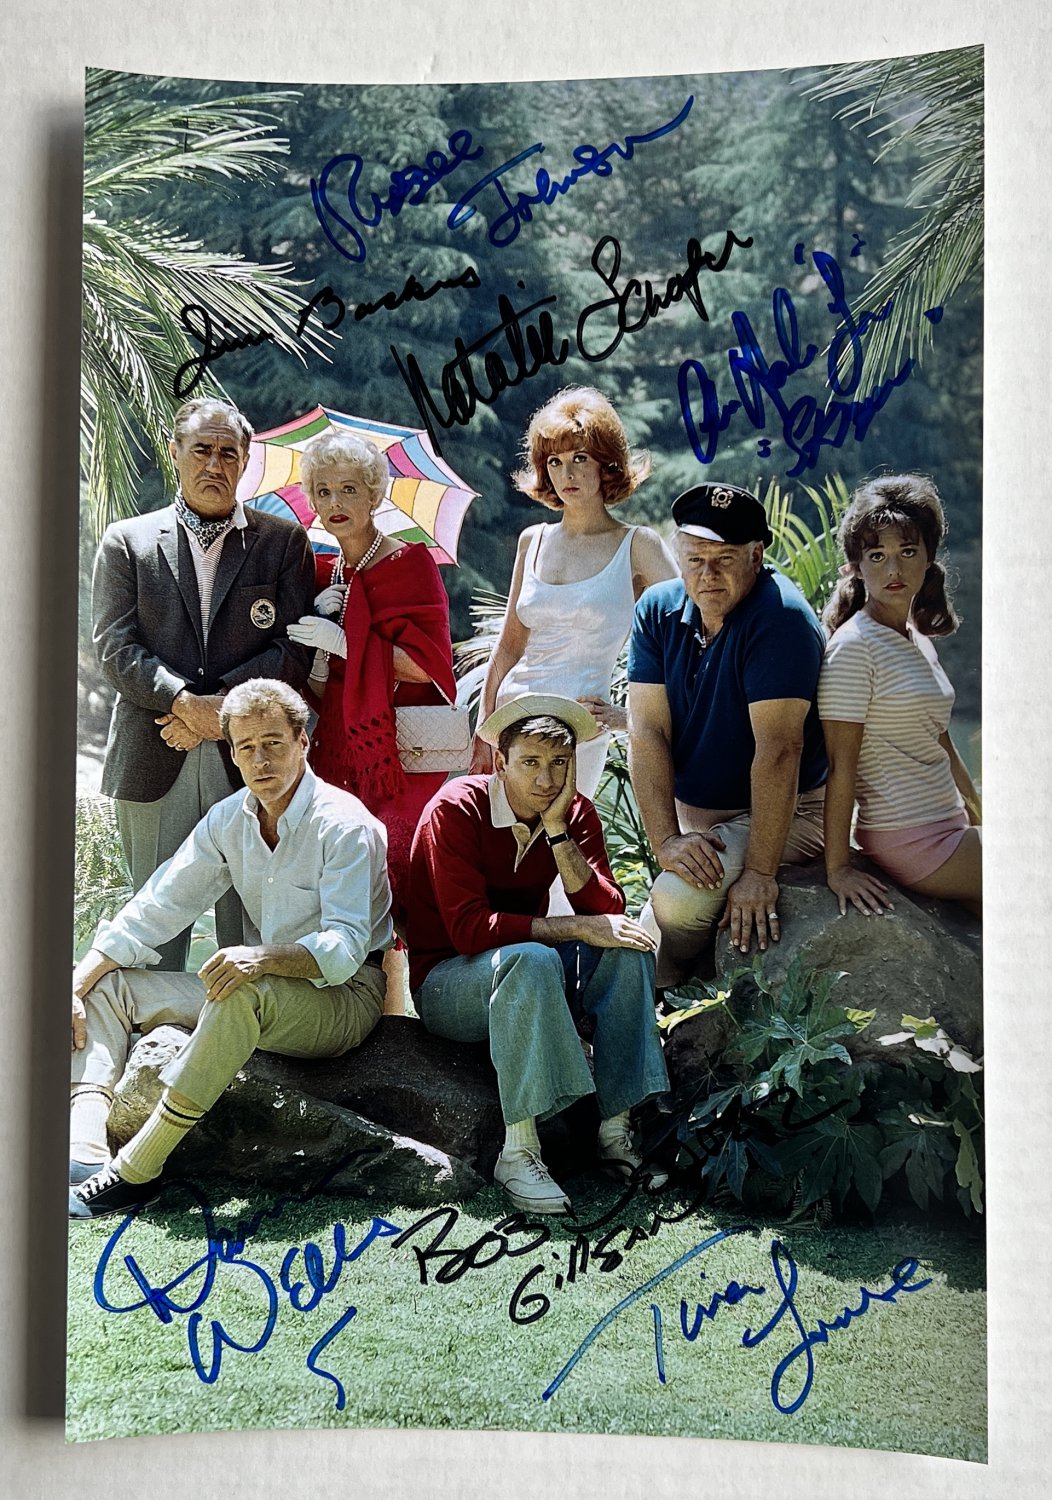 Gilligan's Island cast signed autographed 8x12 photo Bob Denver Alan Hale Jr. autographs